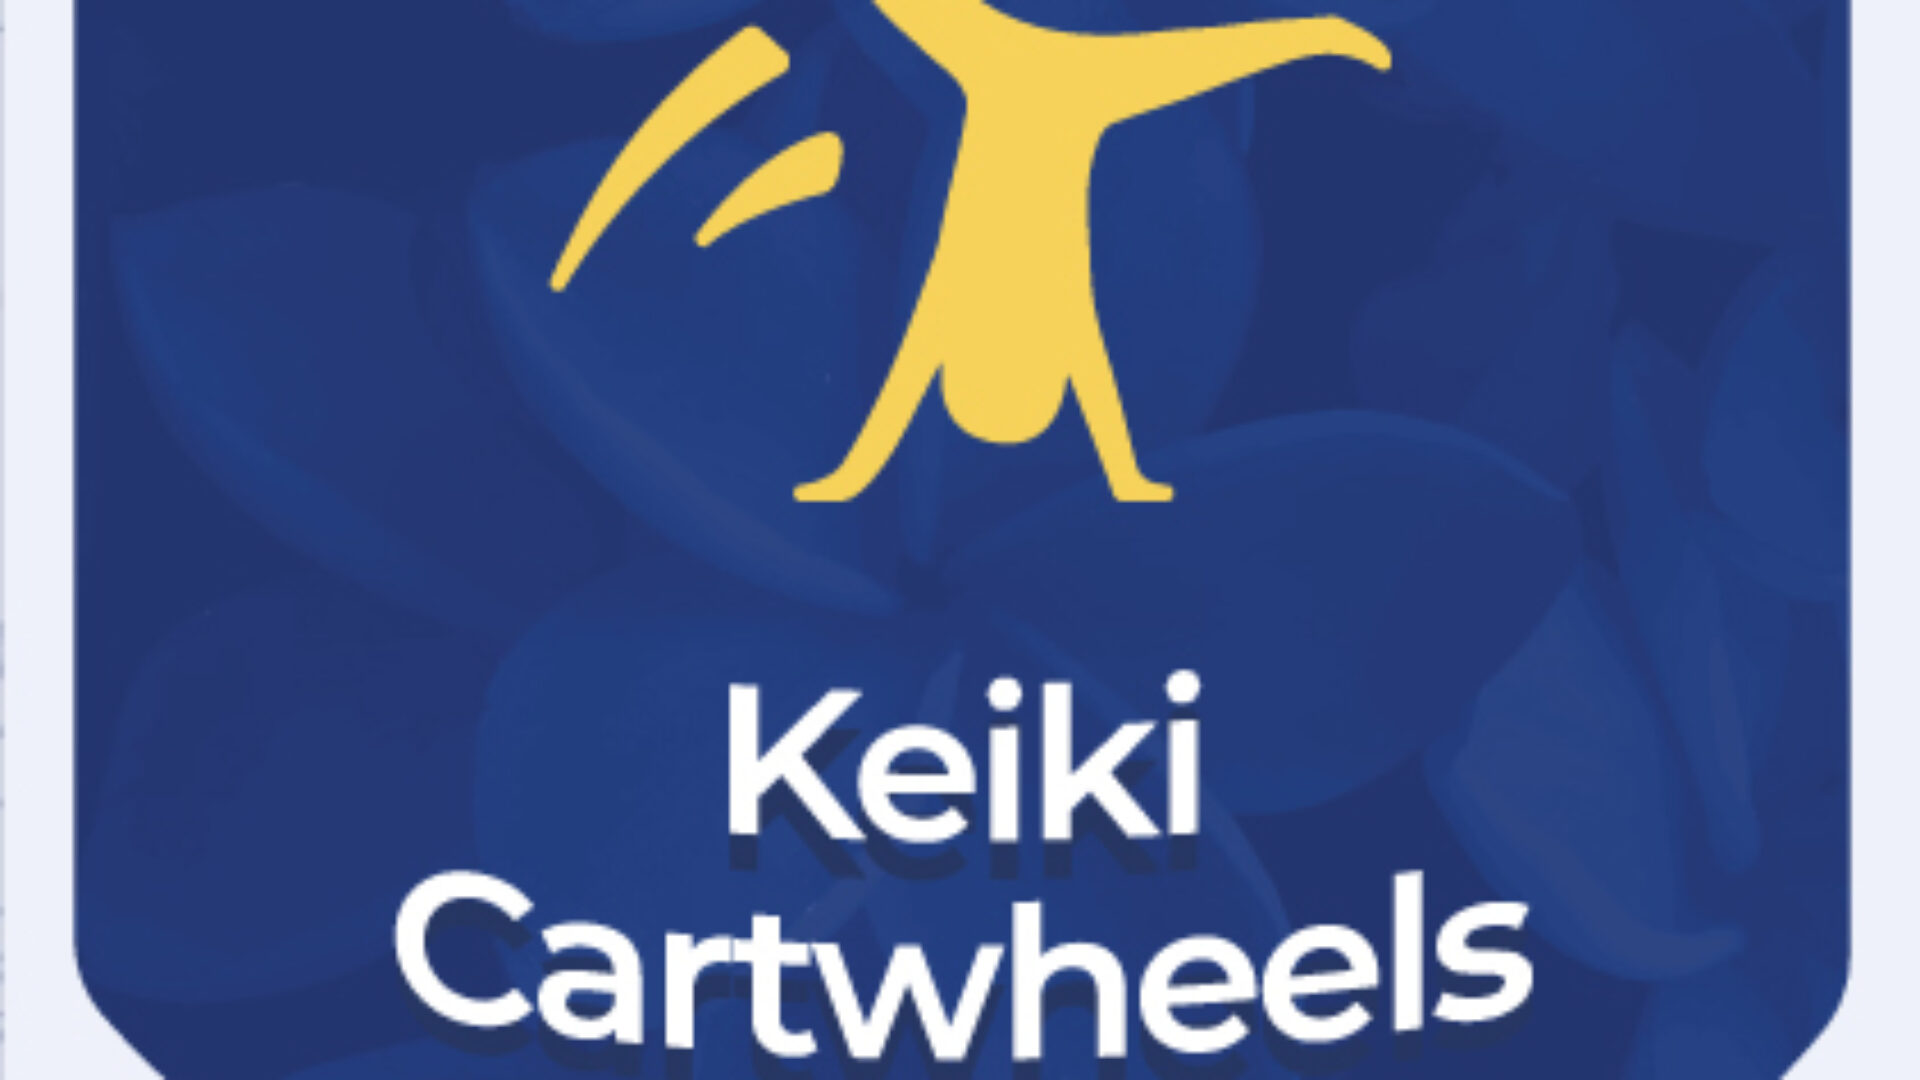 Keiki Cartwheels